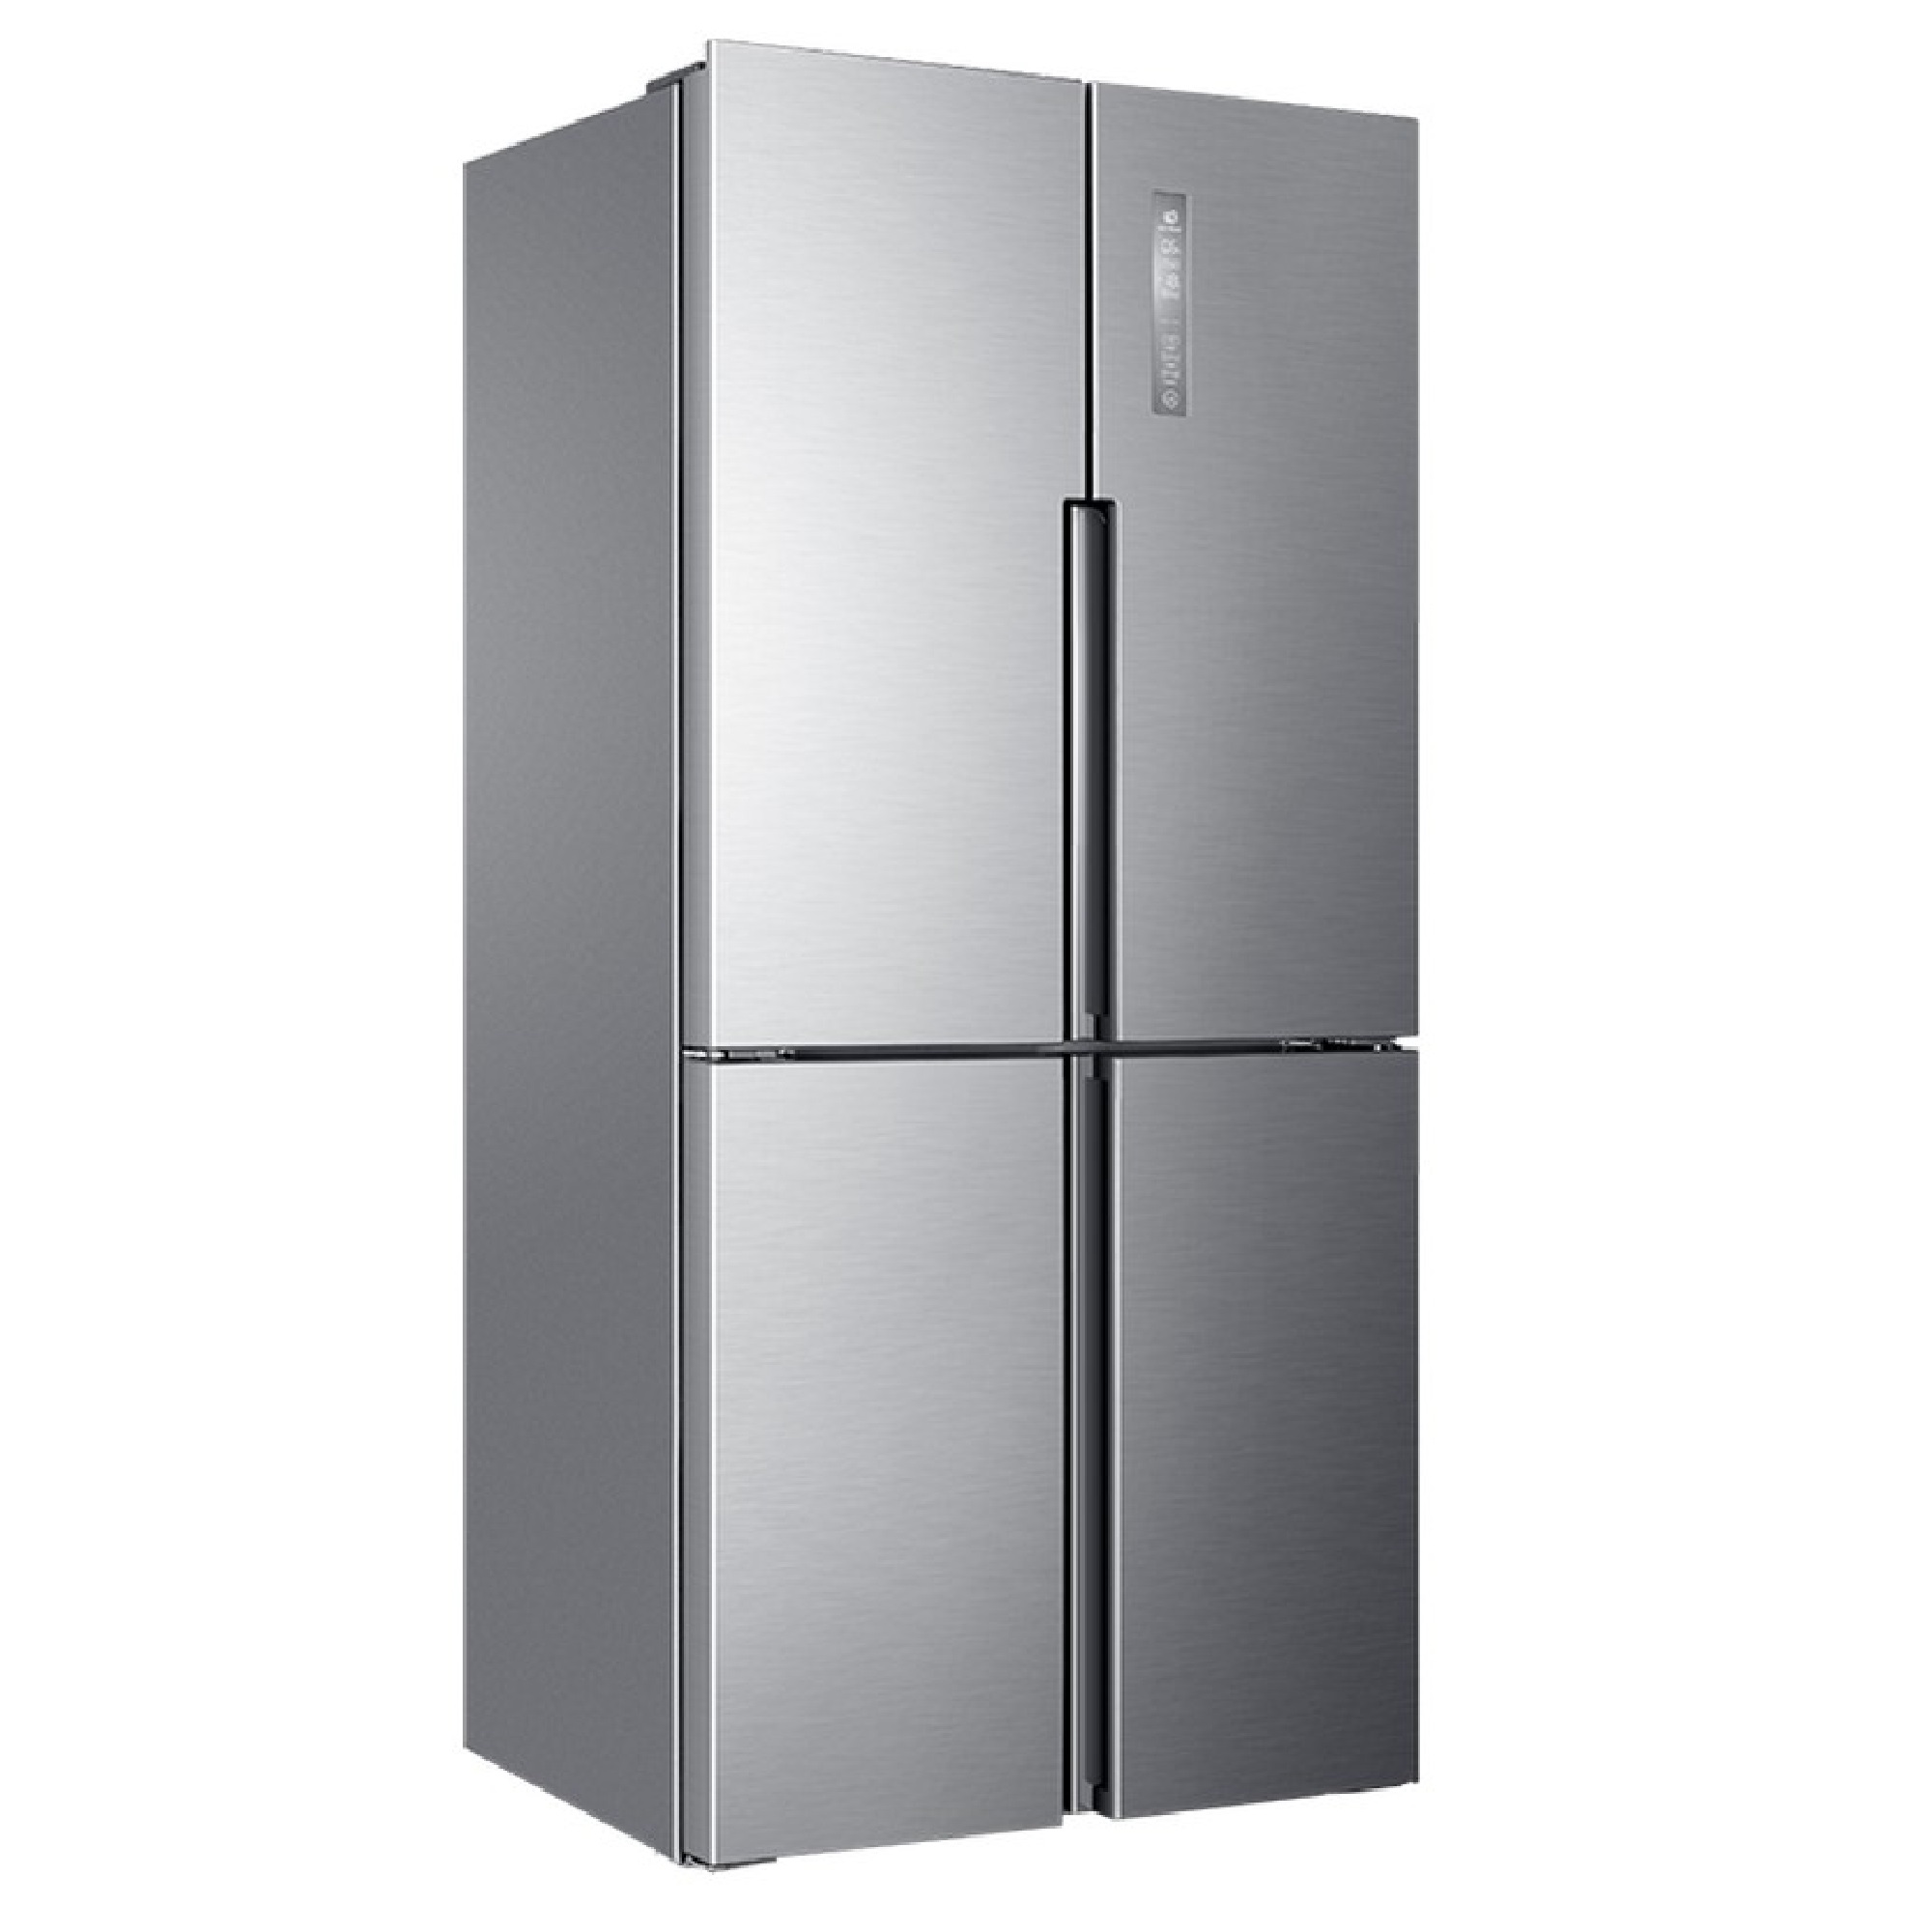 Купить холодильник в челнах. Холодильник многодверный Haier HTF-456dm6ru. Холодильник (Side-by-Side) Haier HRF-541dg7ru. Холодильник Хаер HTF 456dm6ru. Холодильник Haier Side by Side.